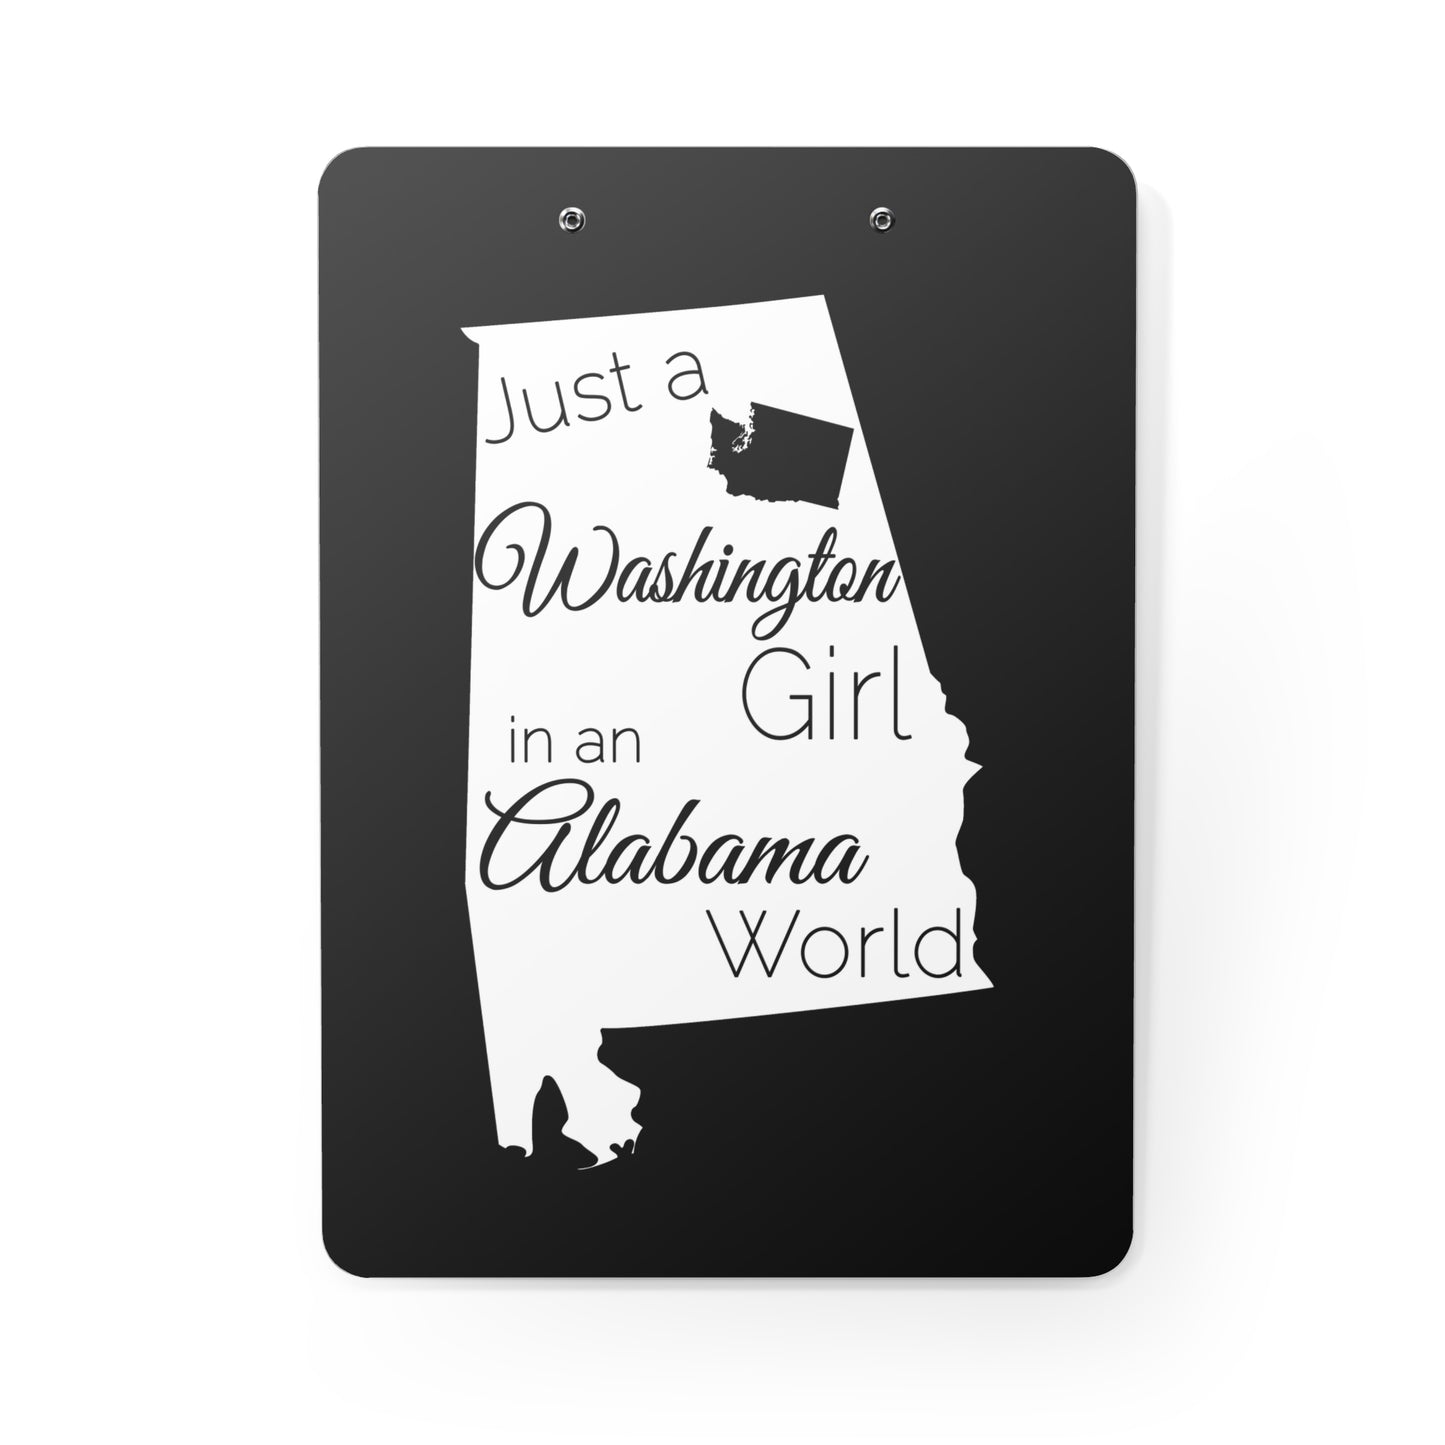 Just a Washington Girl in an Alabama World Clipboard